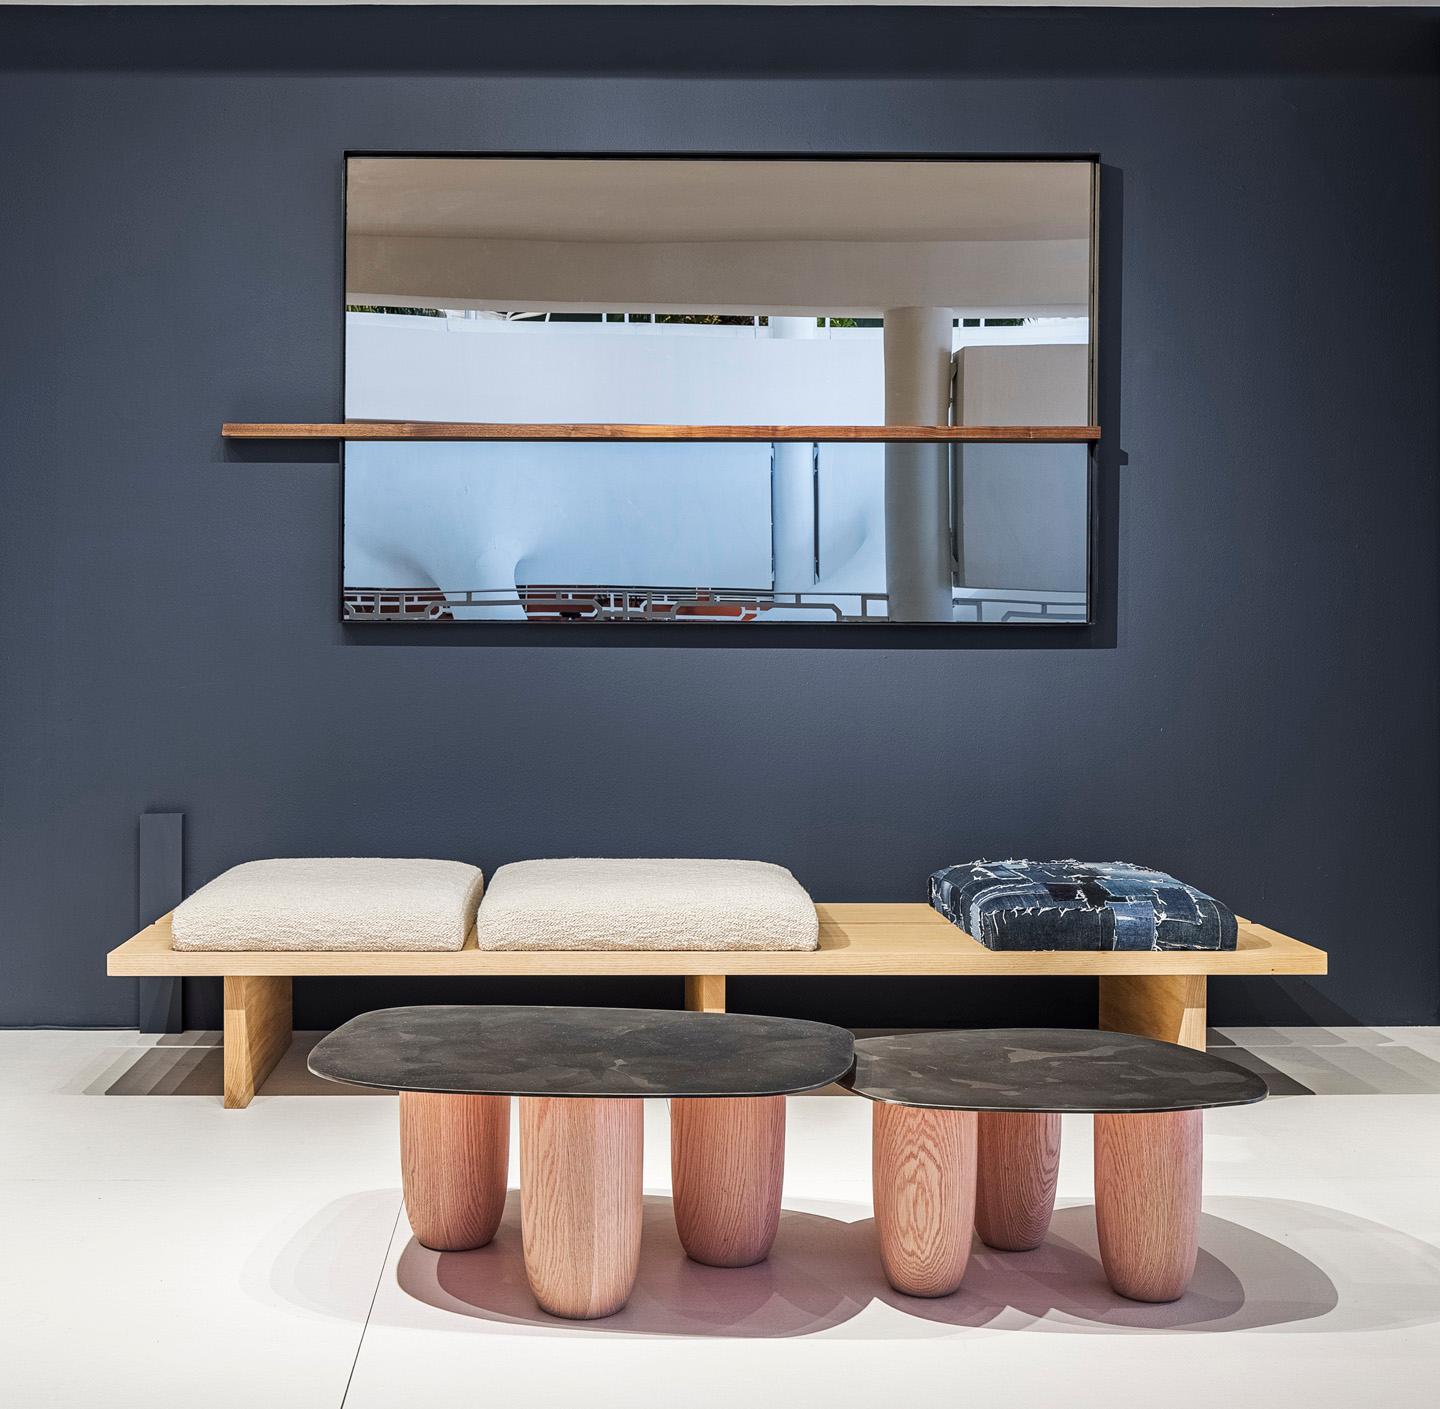 Nos tables basses contemporaines Sumo ont été présentées lors du salon Design/One 2020. Ce design a été influencé par l'esthétique minimaliste japonaise et très inspiré par le maître Revere Isamu Noguchi. Les qualités du design ressemblent à une